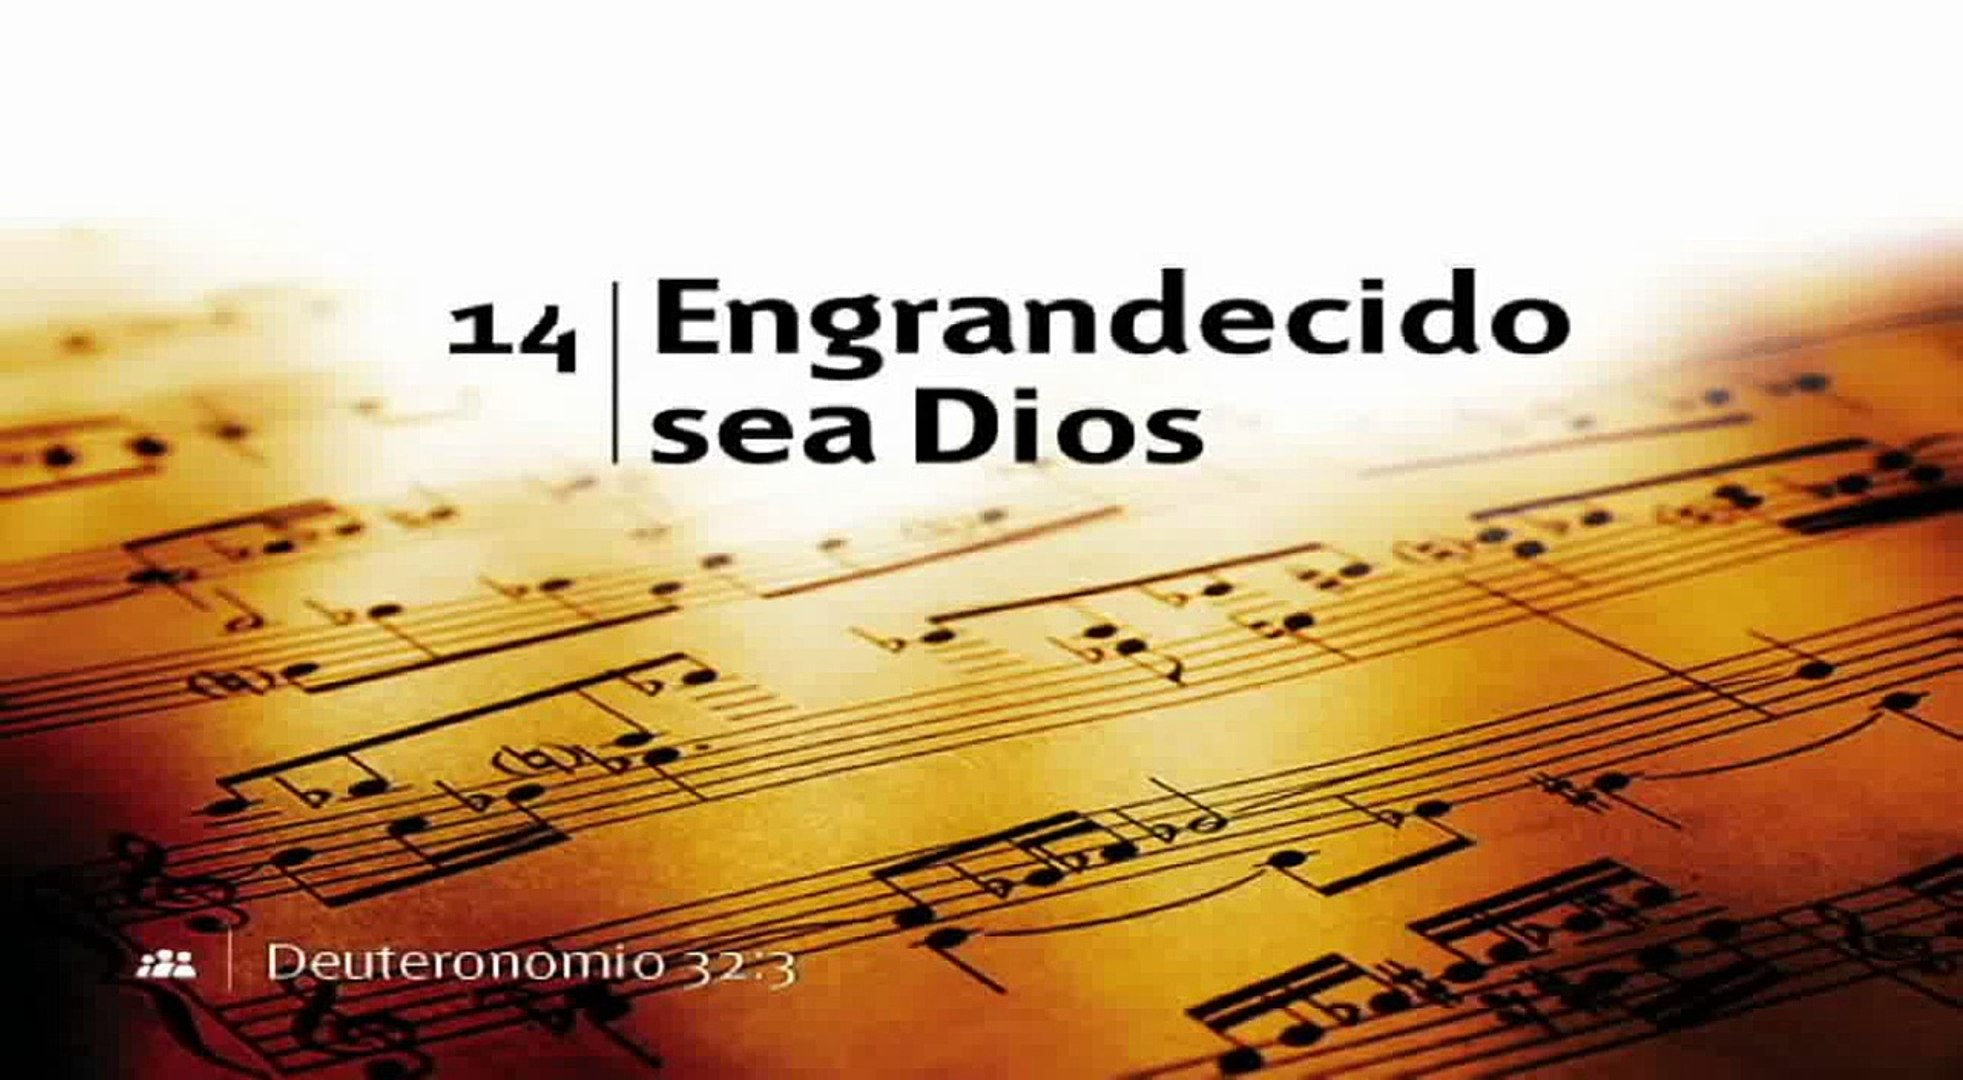 Himno 14 - Engrandecido sea Dios (Nuevo himnario Adventista) - Vídeo  Dailymotion